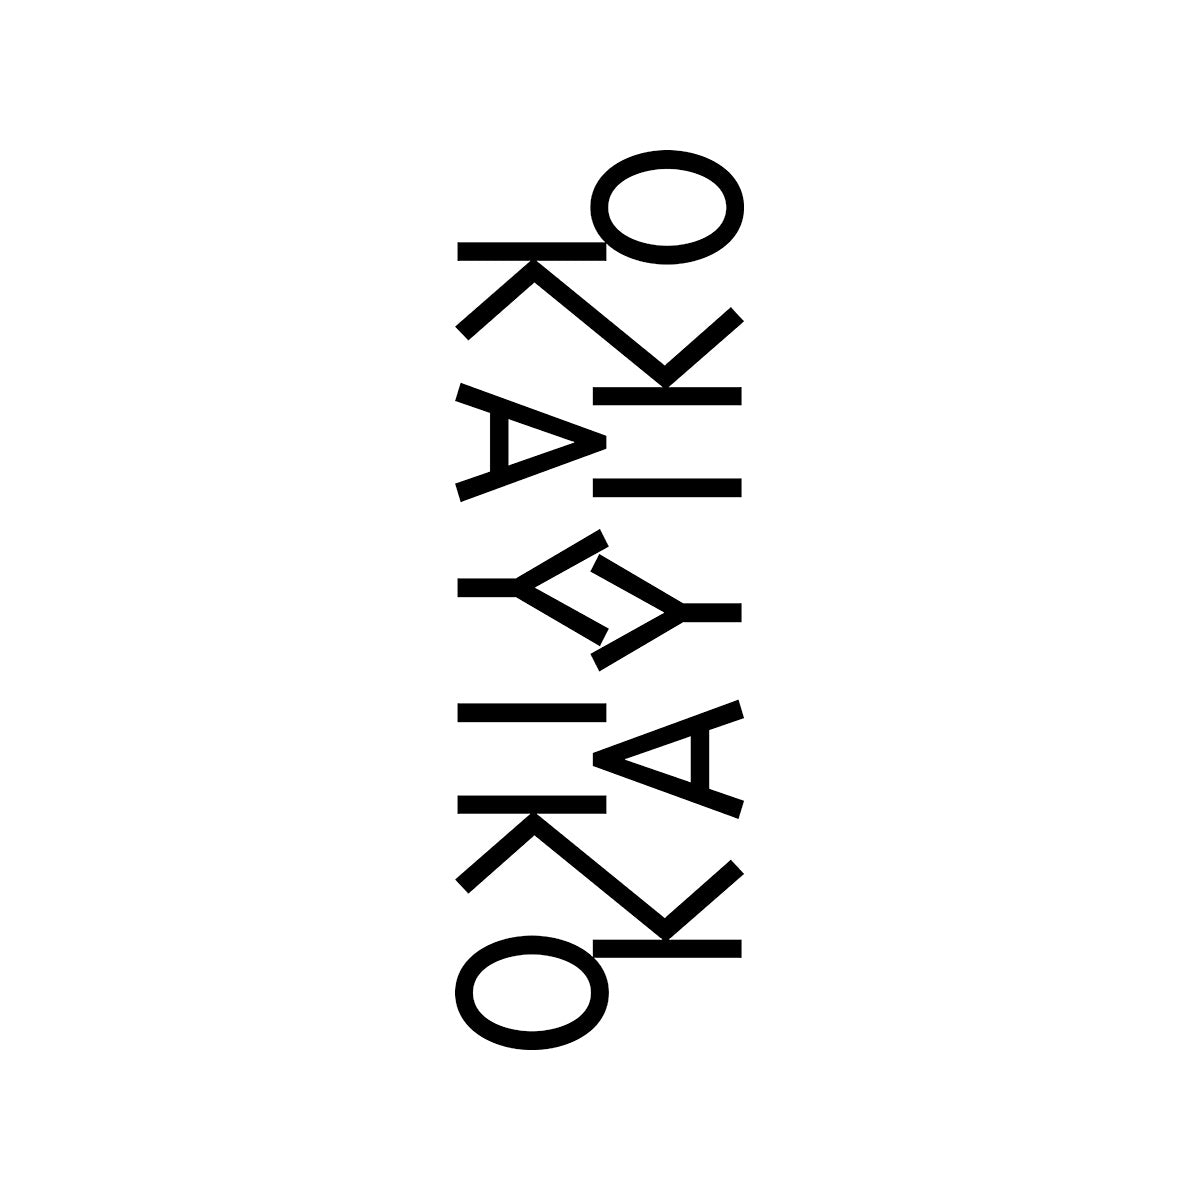 (c) Kayiko.com